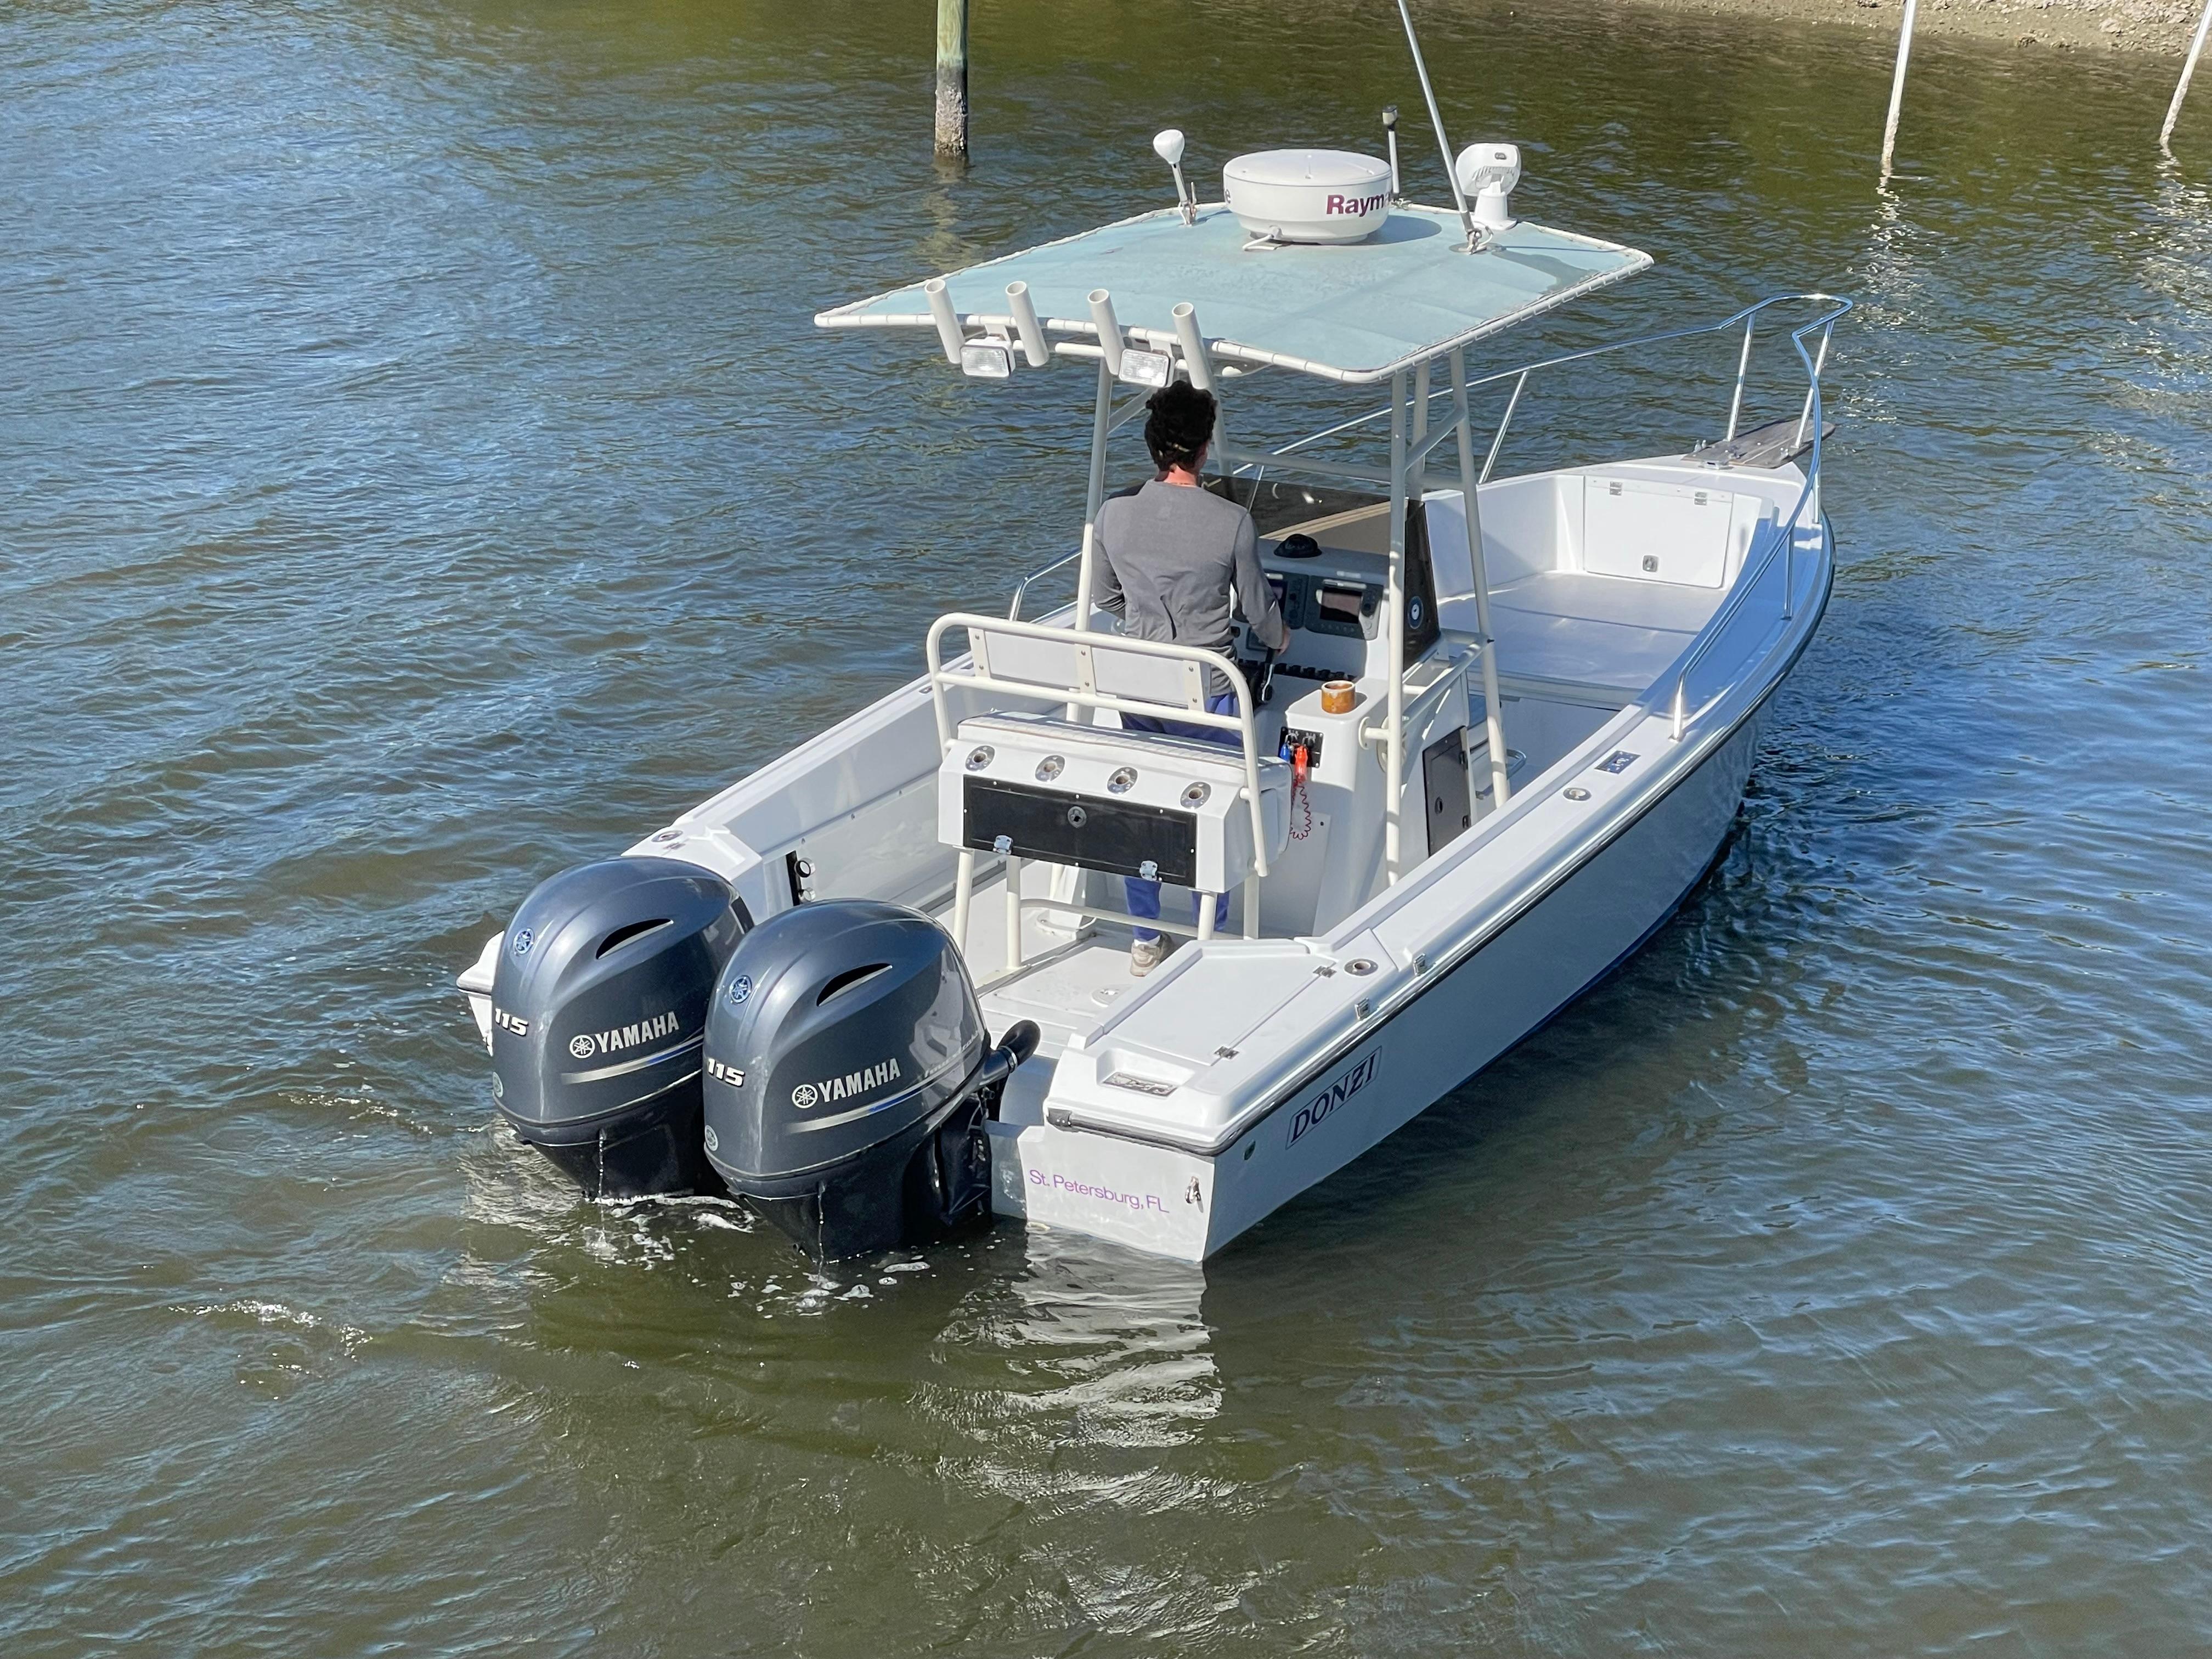 Sold: Donzi 23 ZF Boat in Sarasota, FL, 338944